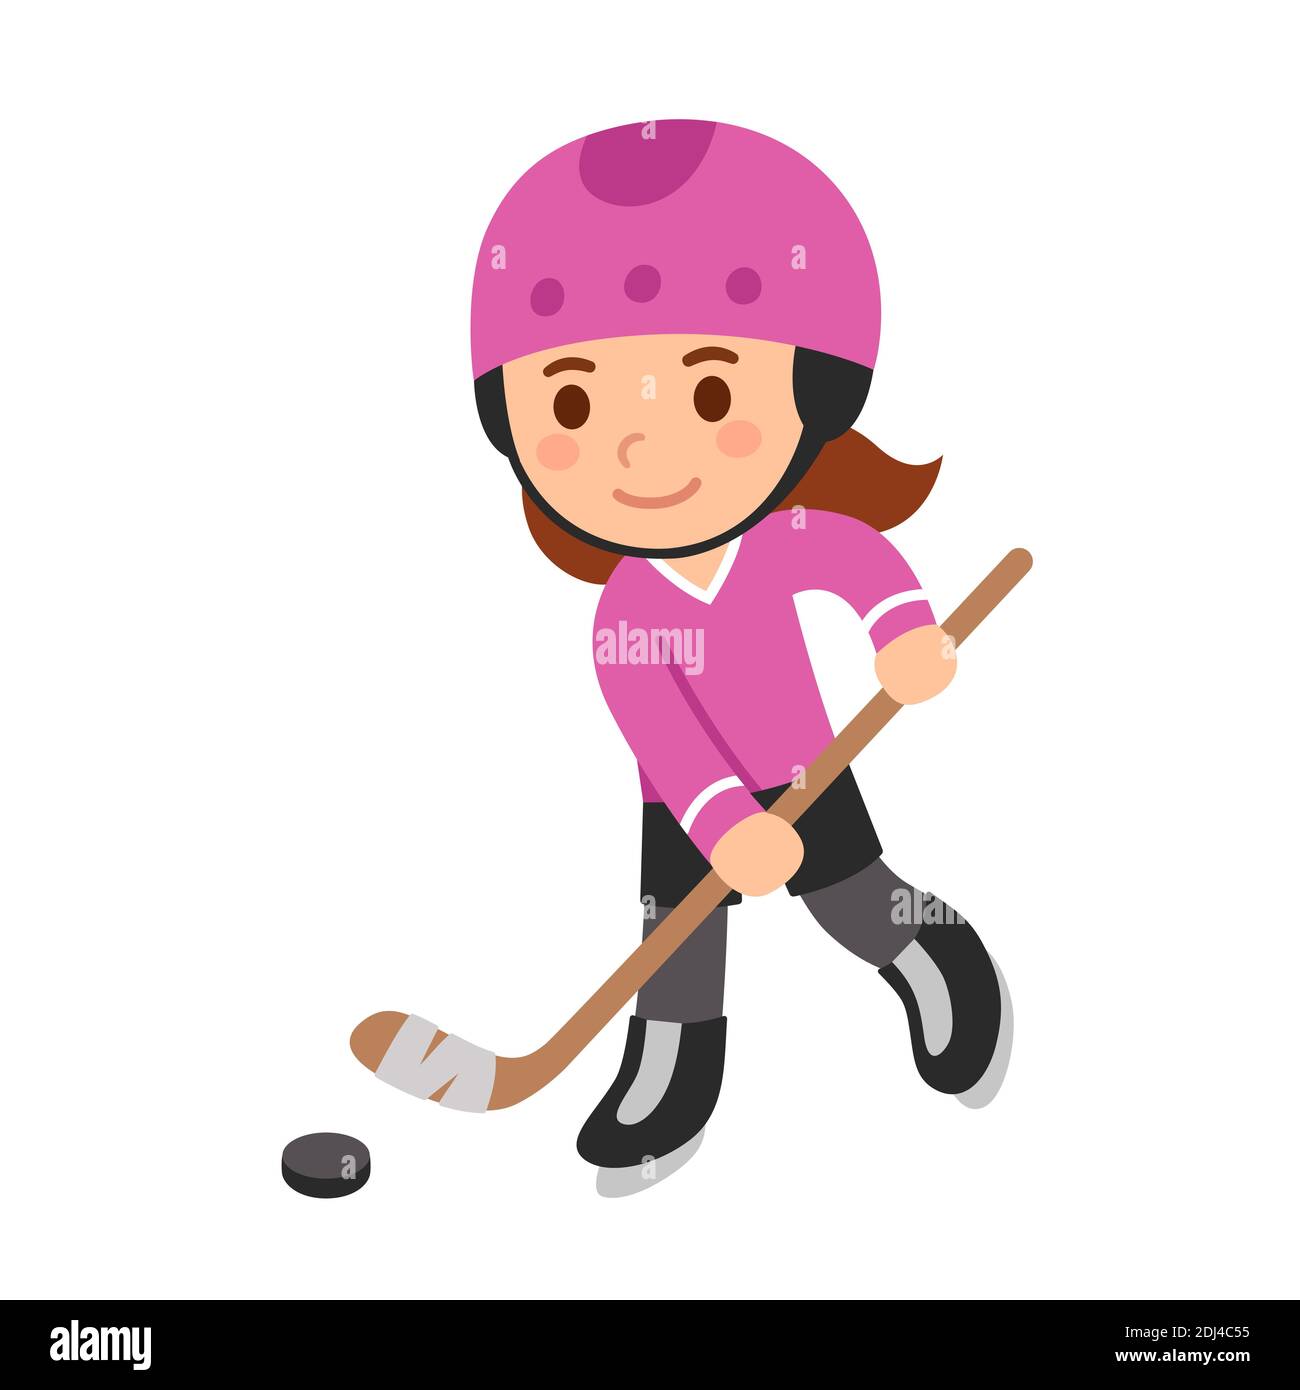 Carino ragazza cartoon giocare a hockey, in uniforme rosa e casco. Illustrazione della clip art vettoriale isolata. Illustrazione Vettoriale